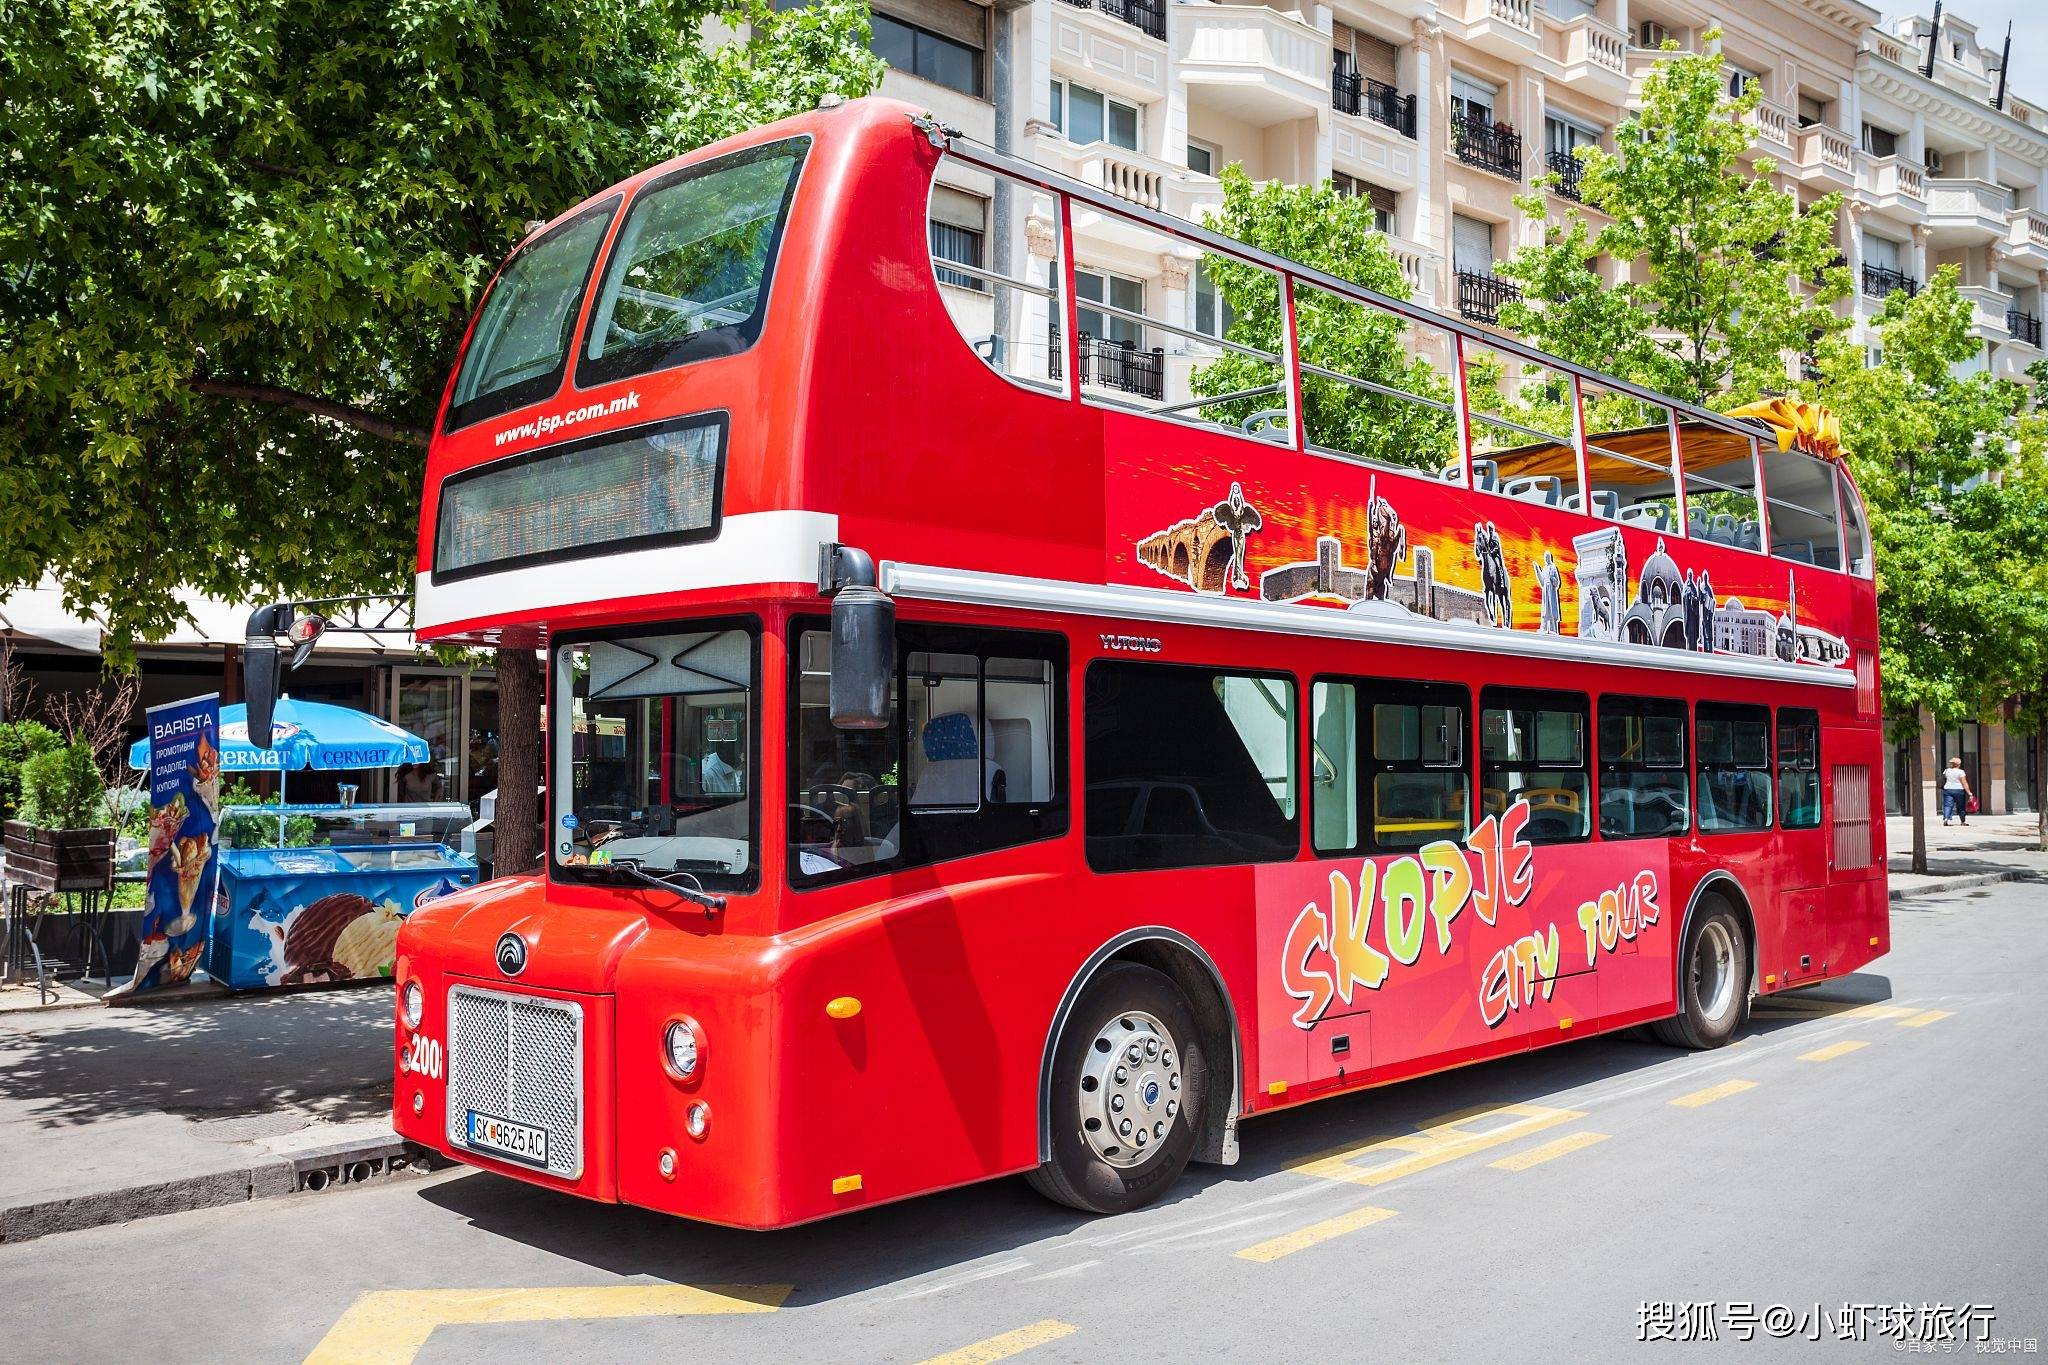 申城观光双层巴士:探索上海的繁华与魅力